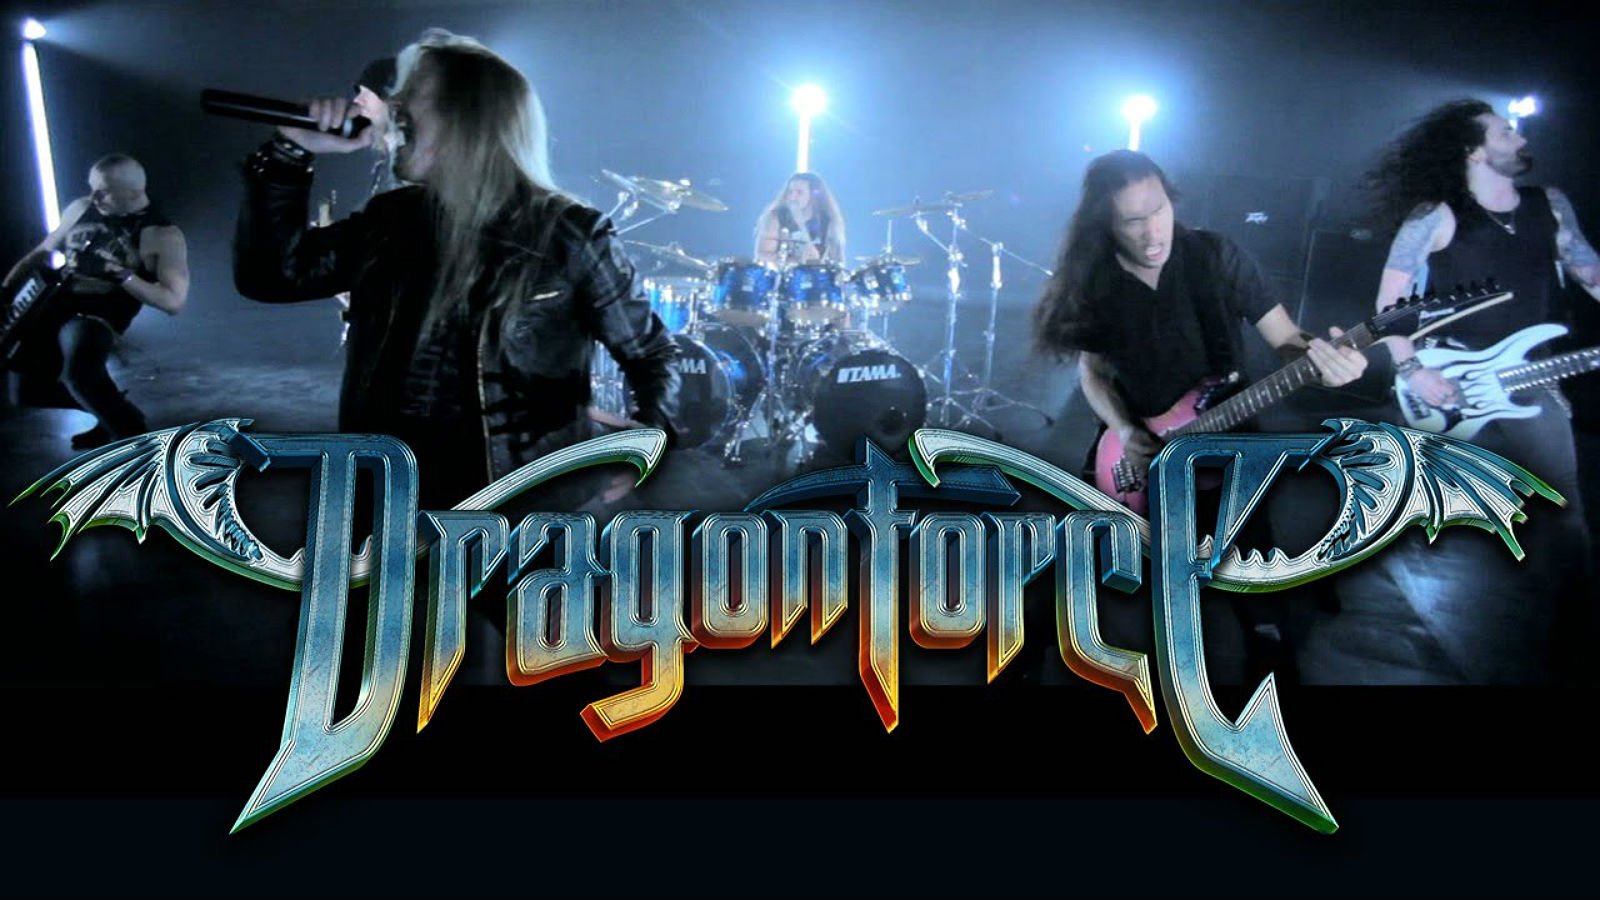 dragonforce, Speed, Power, Metal, Heavy, Progressive, Guitar, Concert, Poster Wallpaper